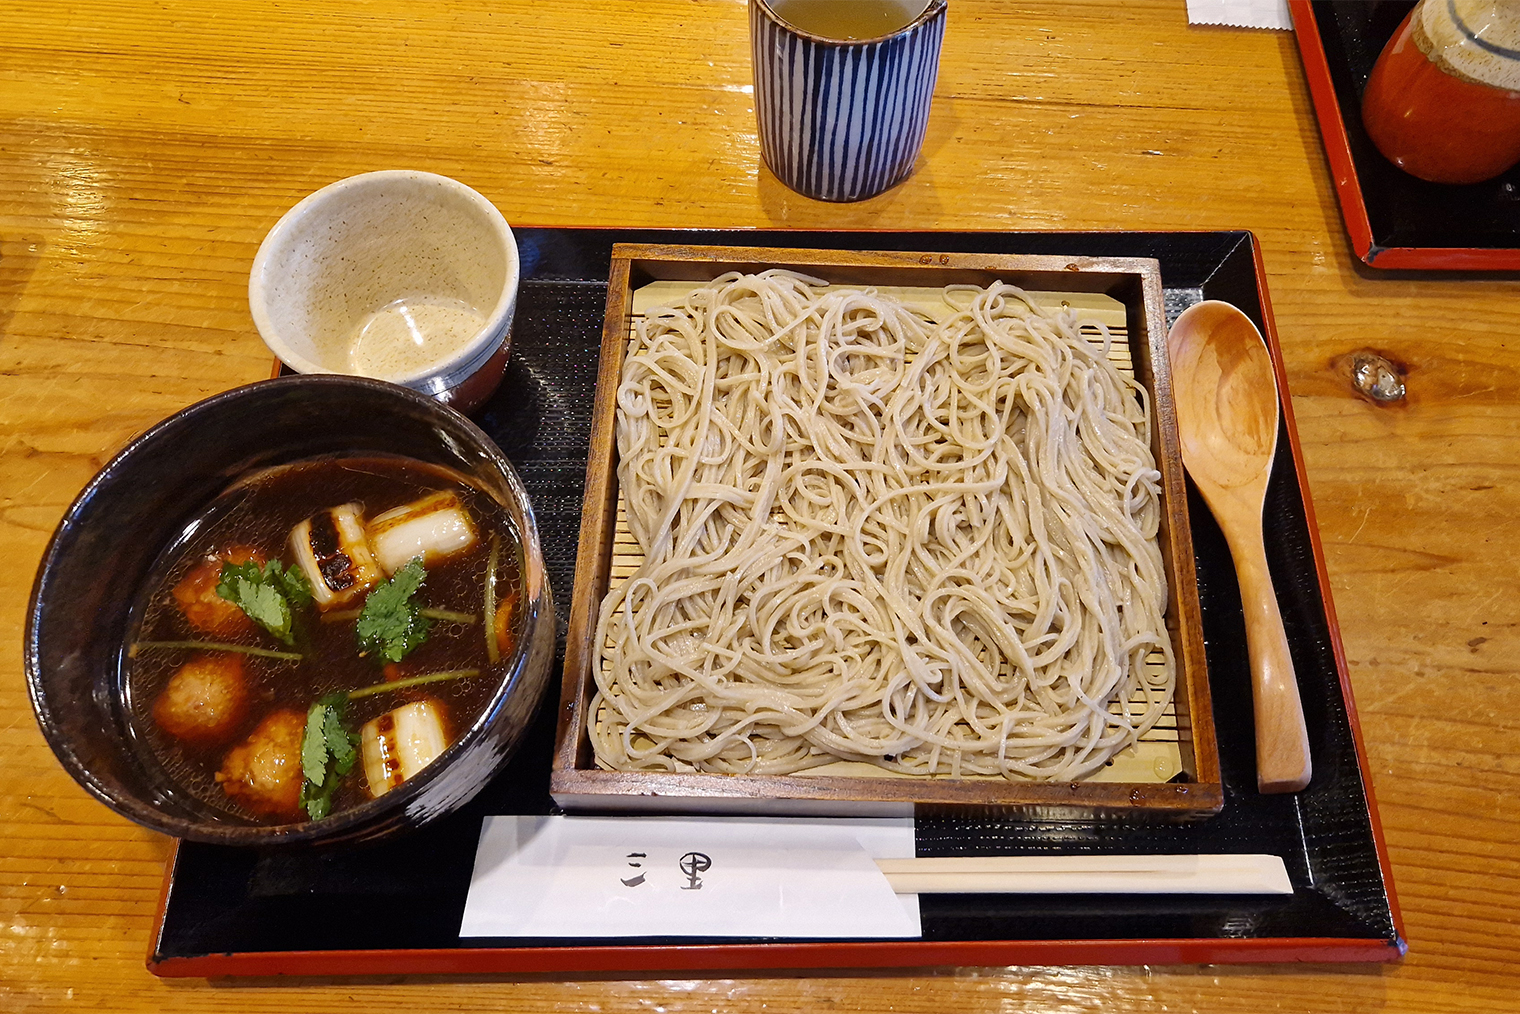 В Японии едят гречневую лапшу соба 31 декабря, чтобы попрощаться с прошедшим годом и поприветствовать наступающий